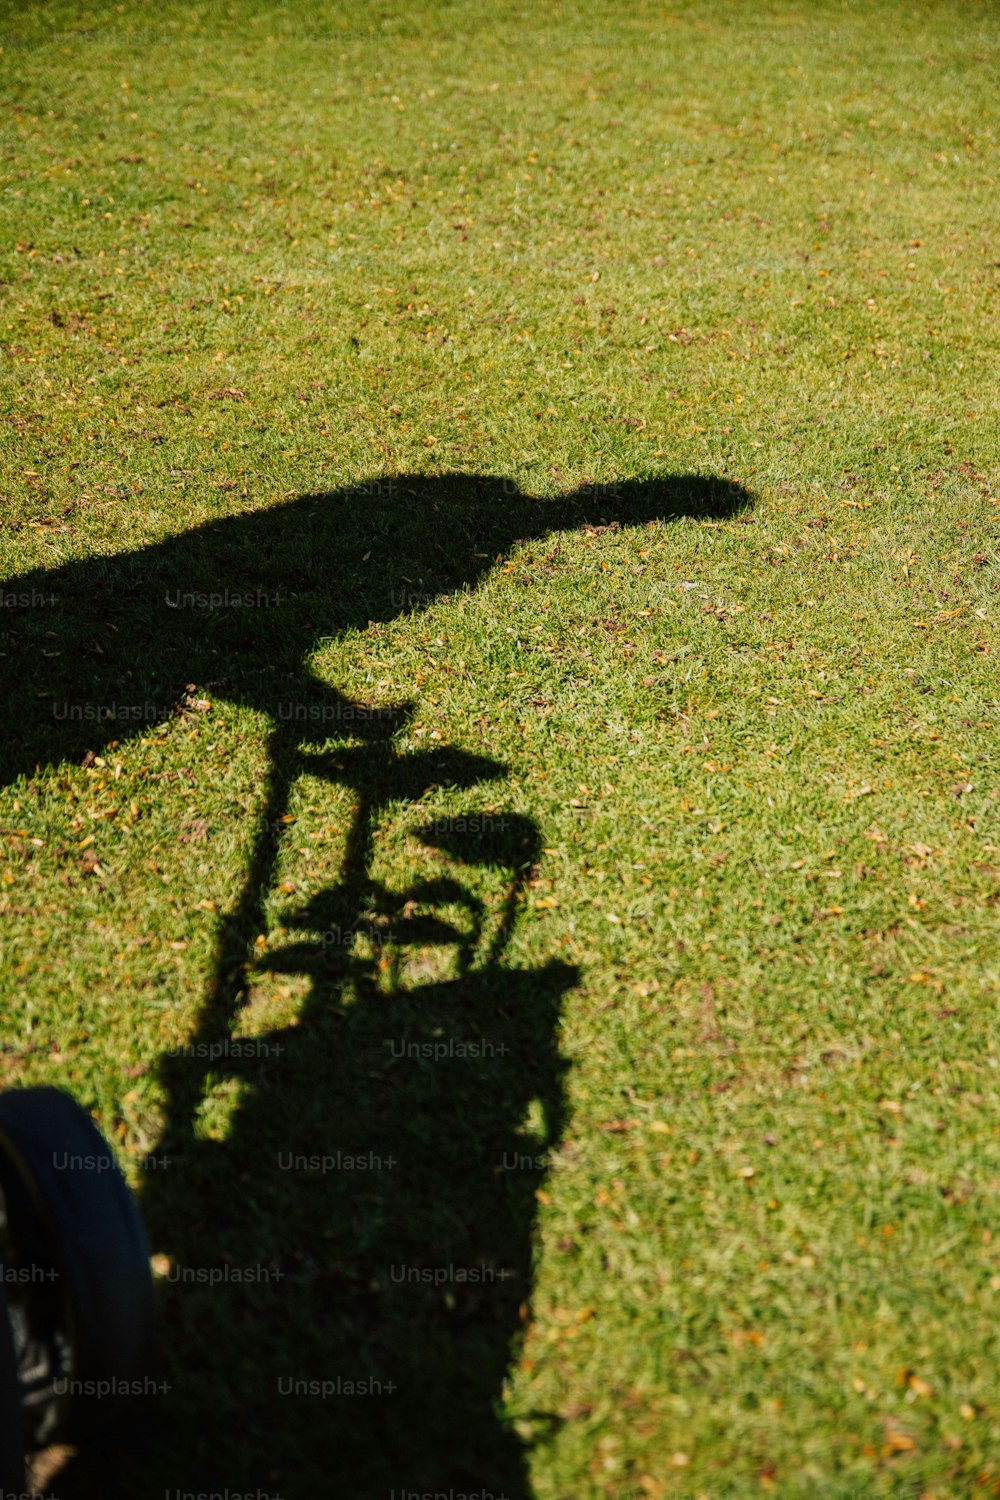 Ein Schatten einer Person, die mit dem Fahrrad im Gras fährt